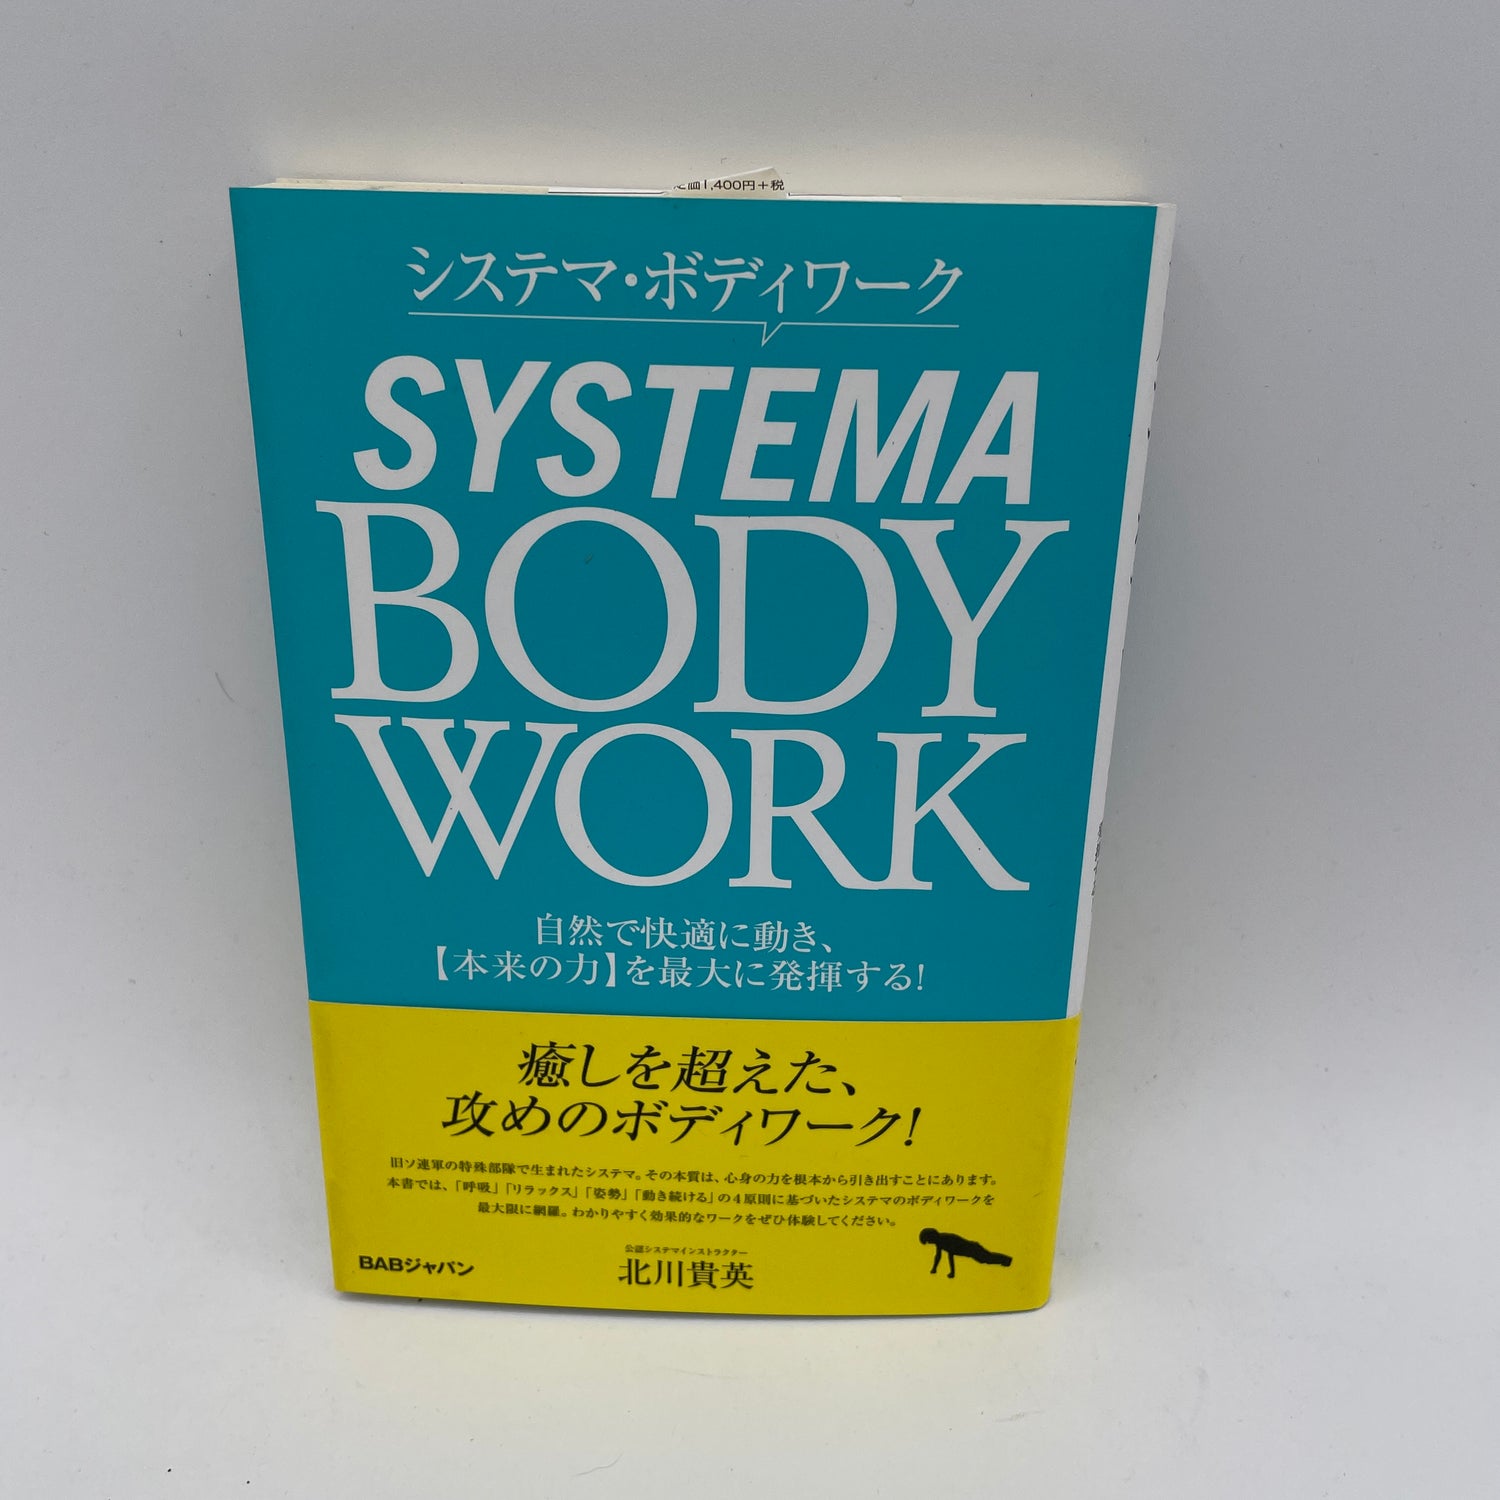 Libro de trabajo corporal Systema de Takahide Kitagawa